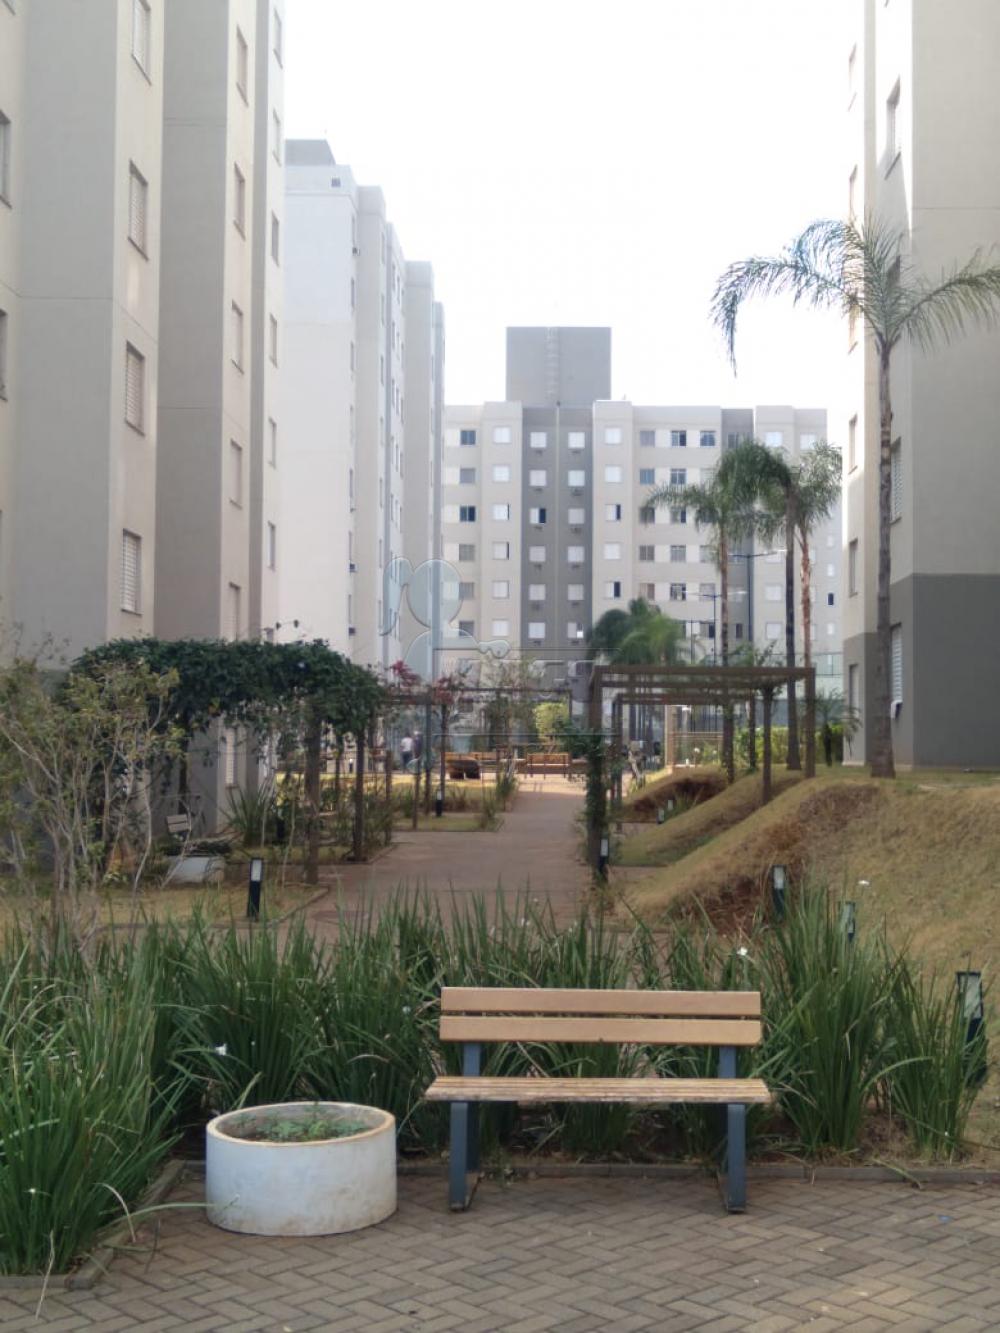 Comprar Apartamento / Padrão em Ribeirão Preto R$ 235.000,00 - Foto 13